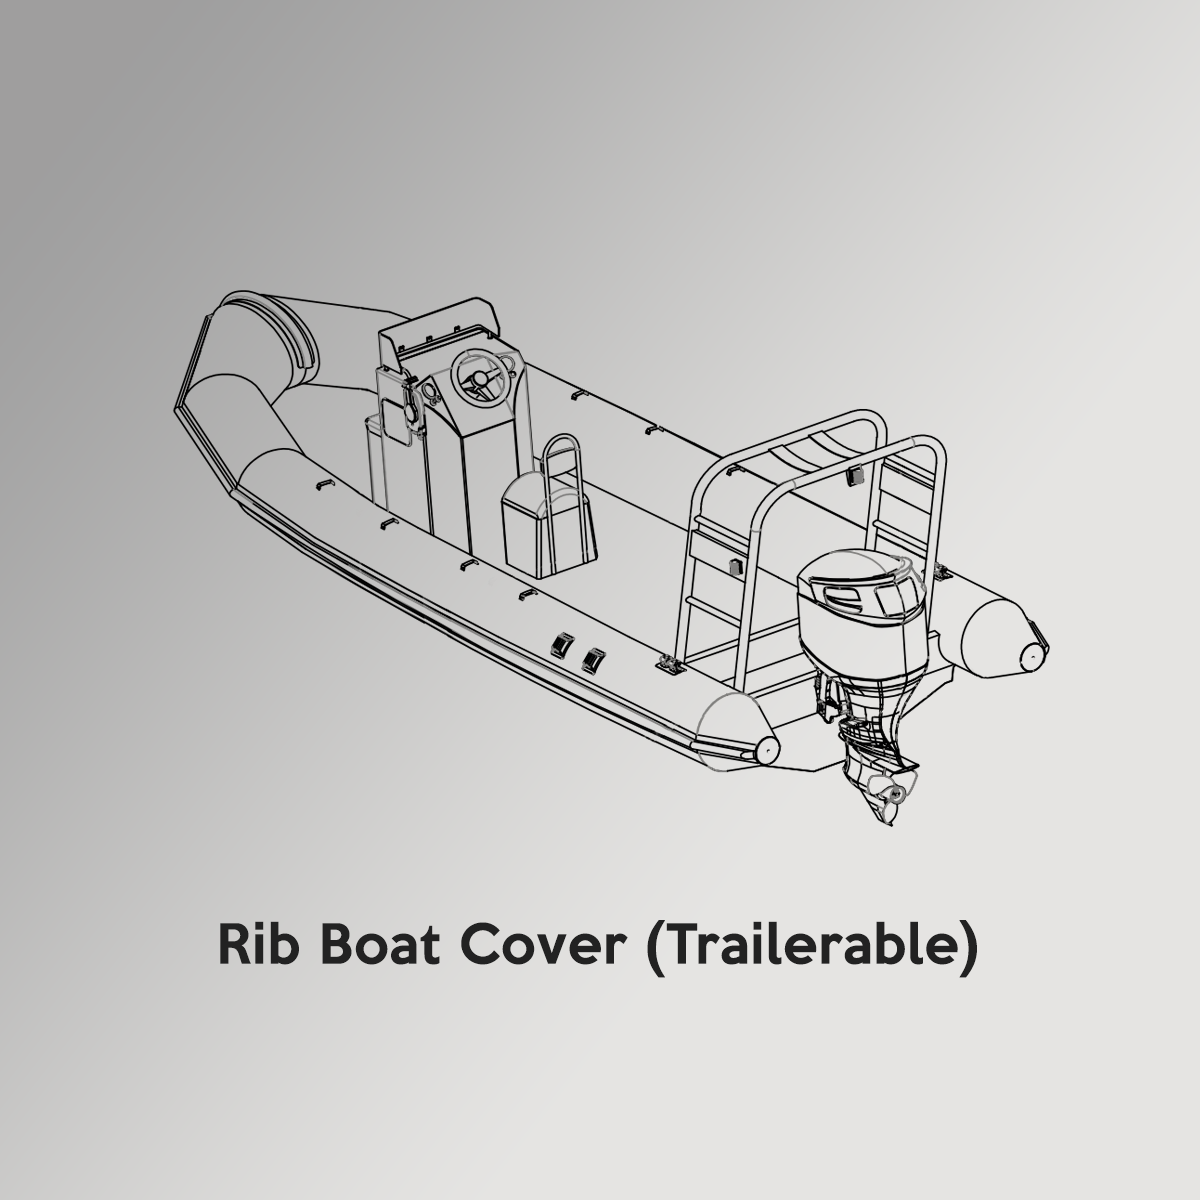 Rib Boat Cover (Trailerable)